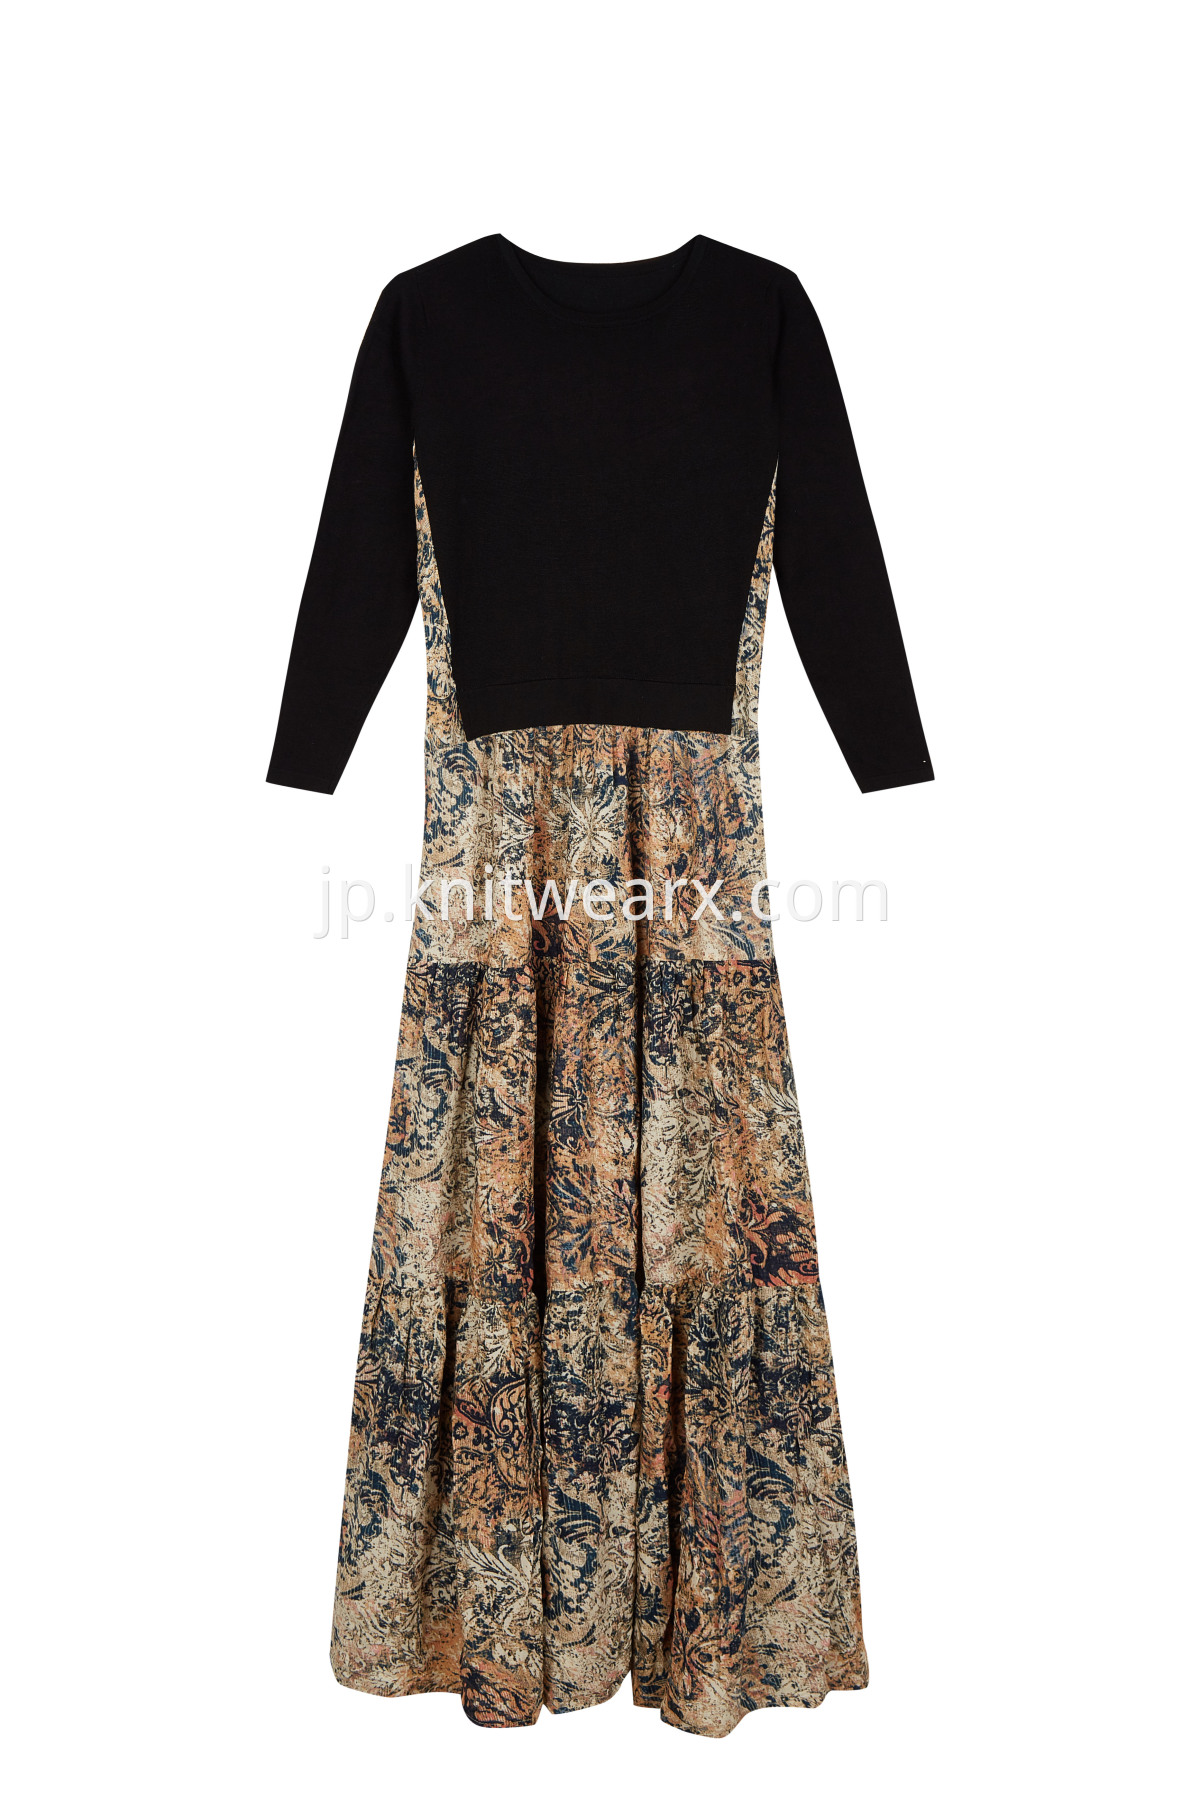 Women's Elegant Knit and Woven Print Bohemian Long Dress 